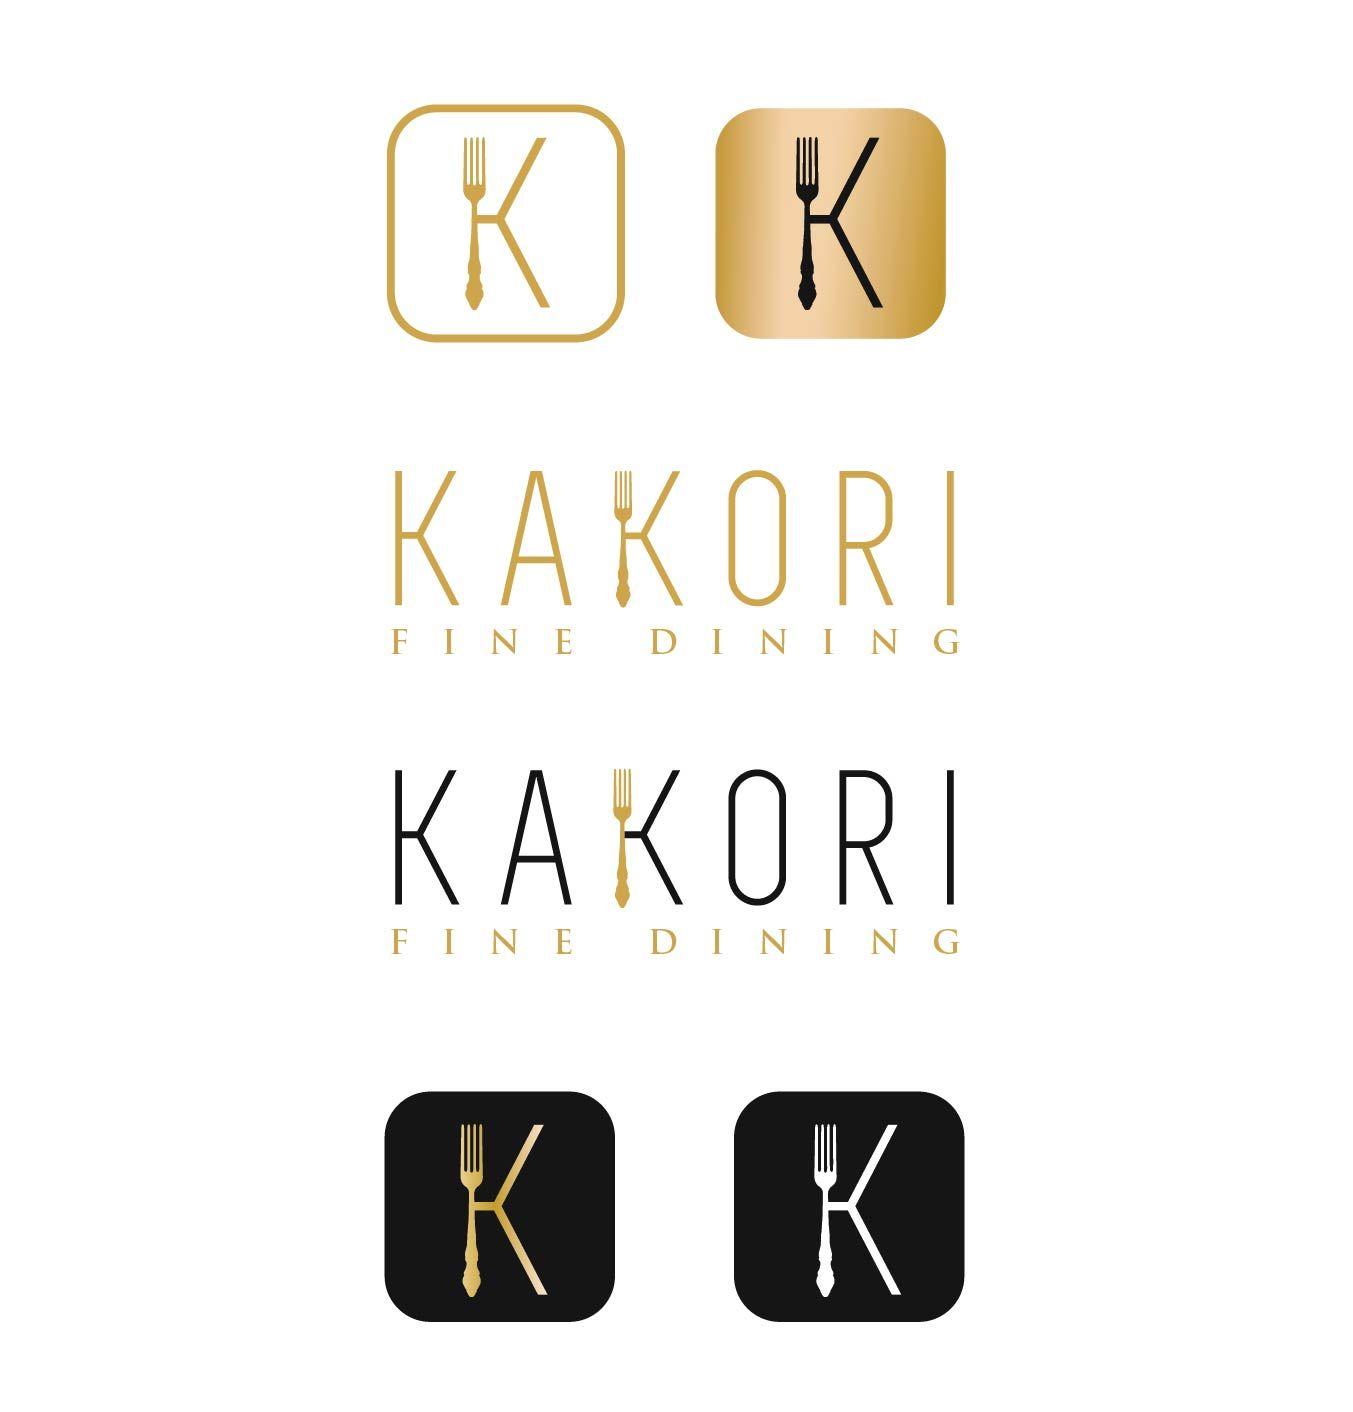 K K Restaurant Logo - Restaurant Logo Design for KAKORI by sunmoon | Design #11565474